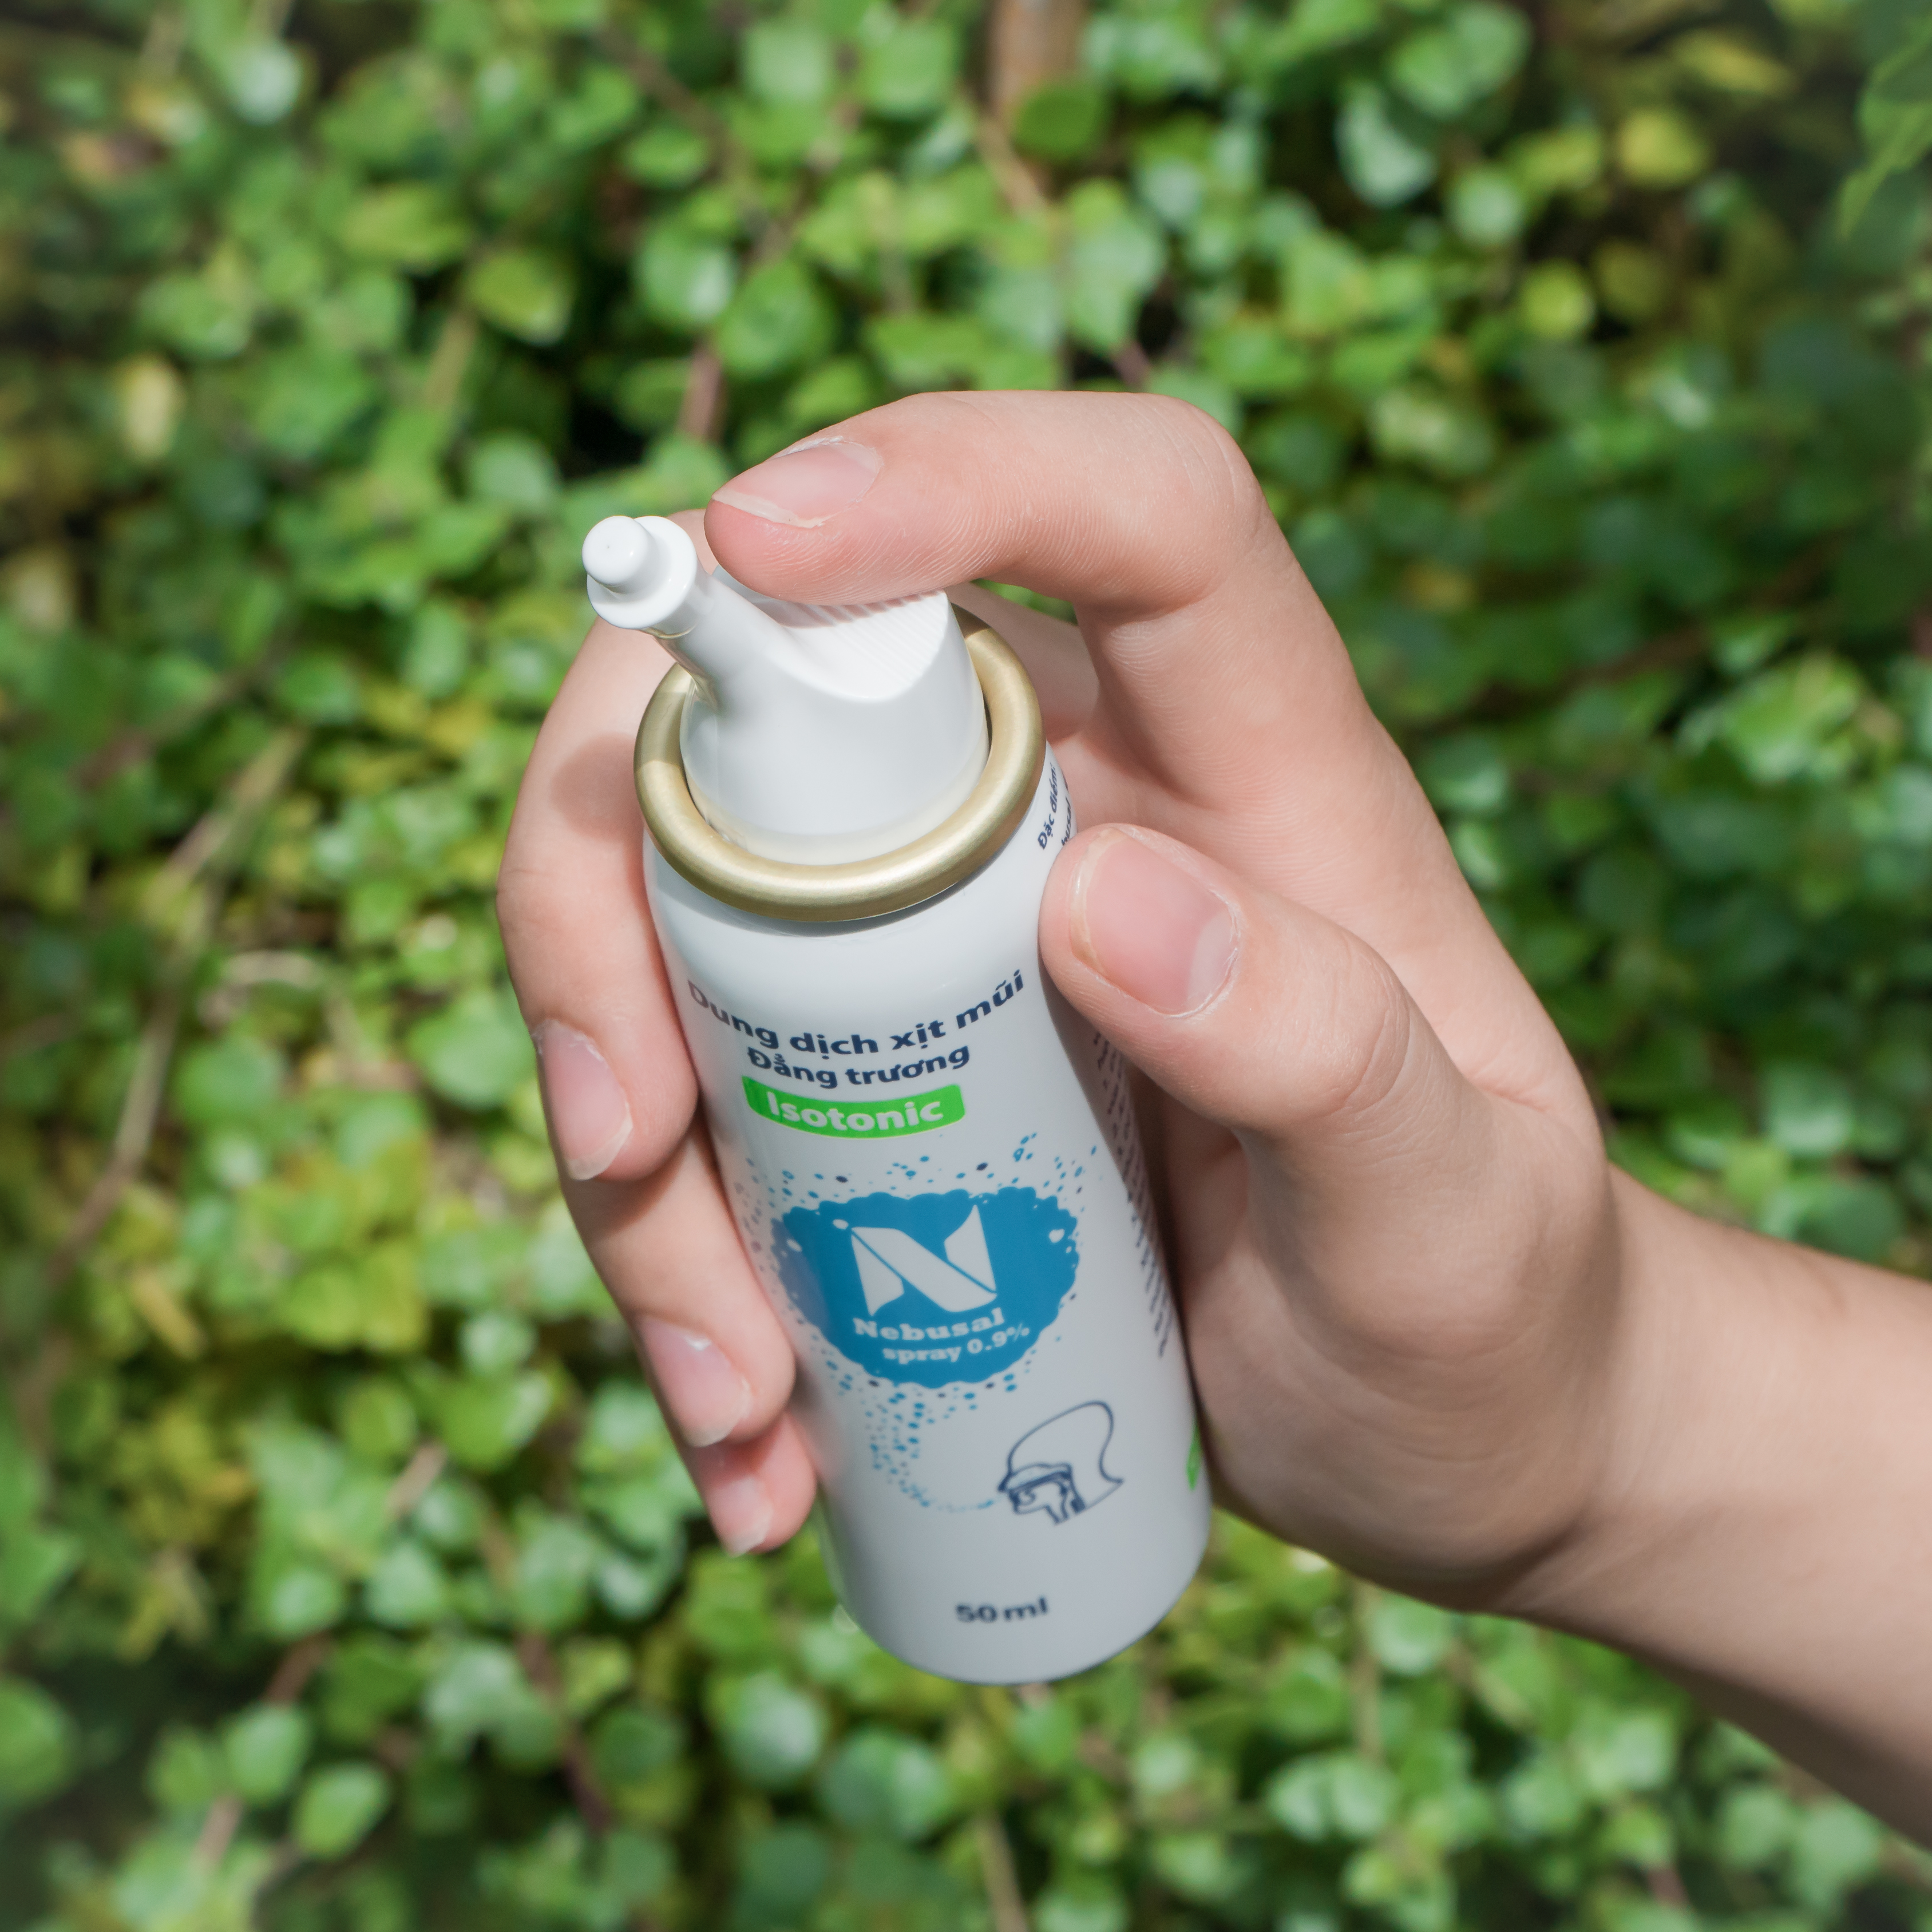 Nước biển xịt mũi Nebusal Spray 0,9%, vệ sinh đường hô hấp, lực xịt dịu nhẹ, phù hợp với trẻ sơ sinh (50ml)